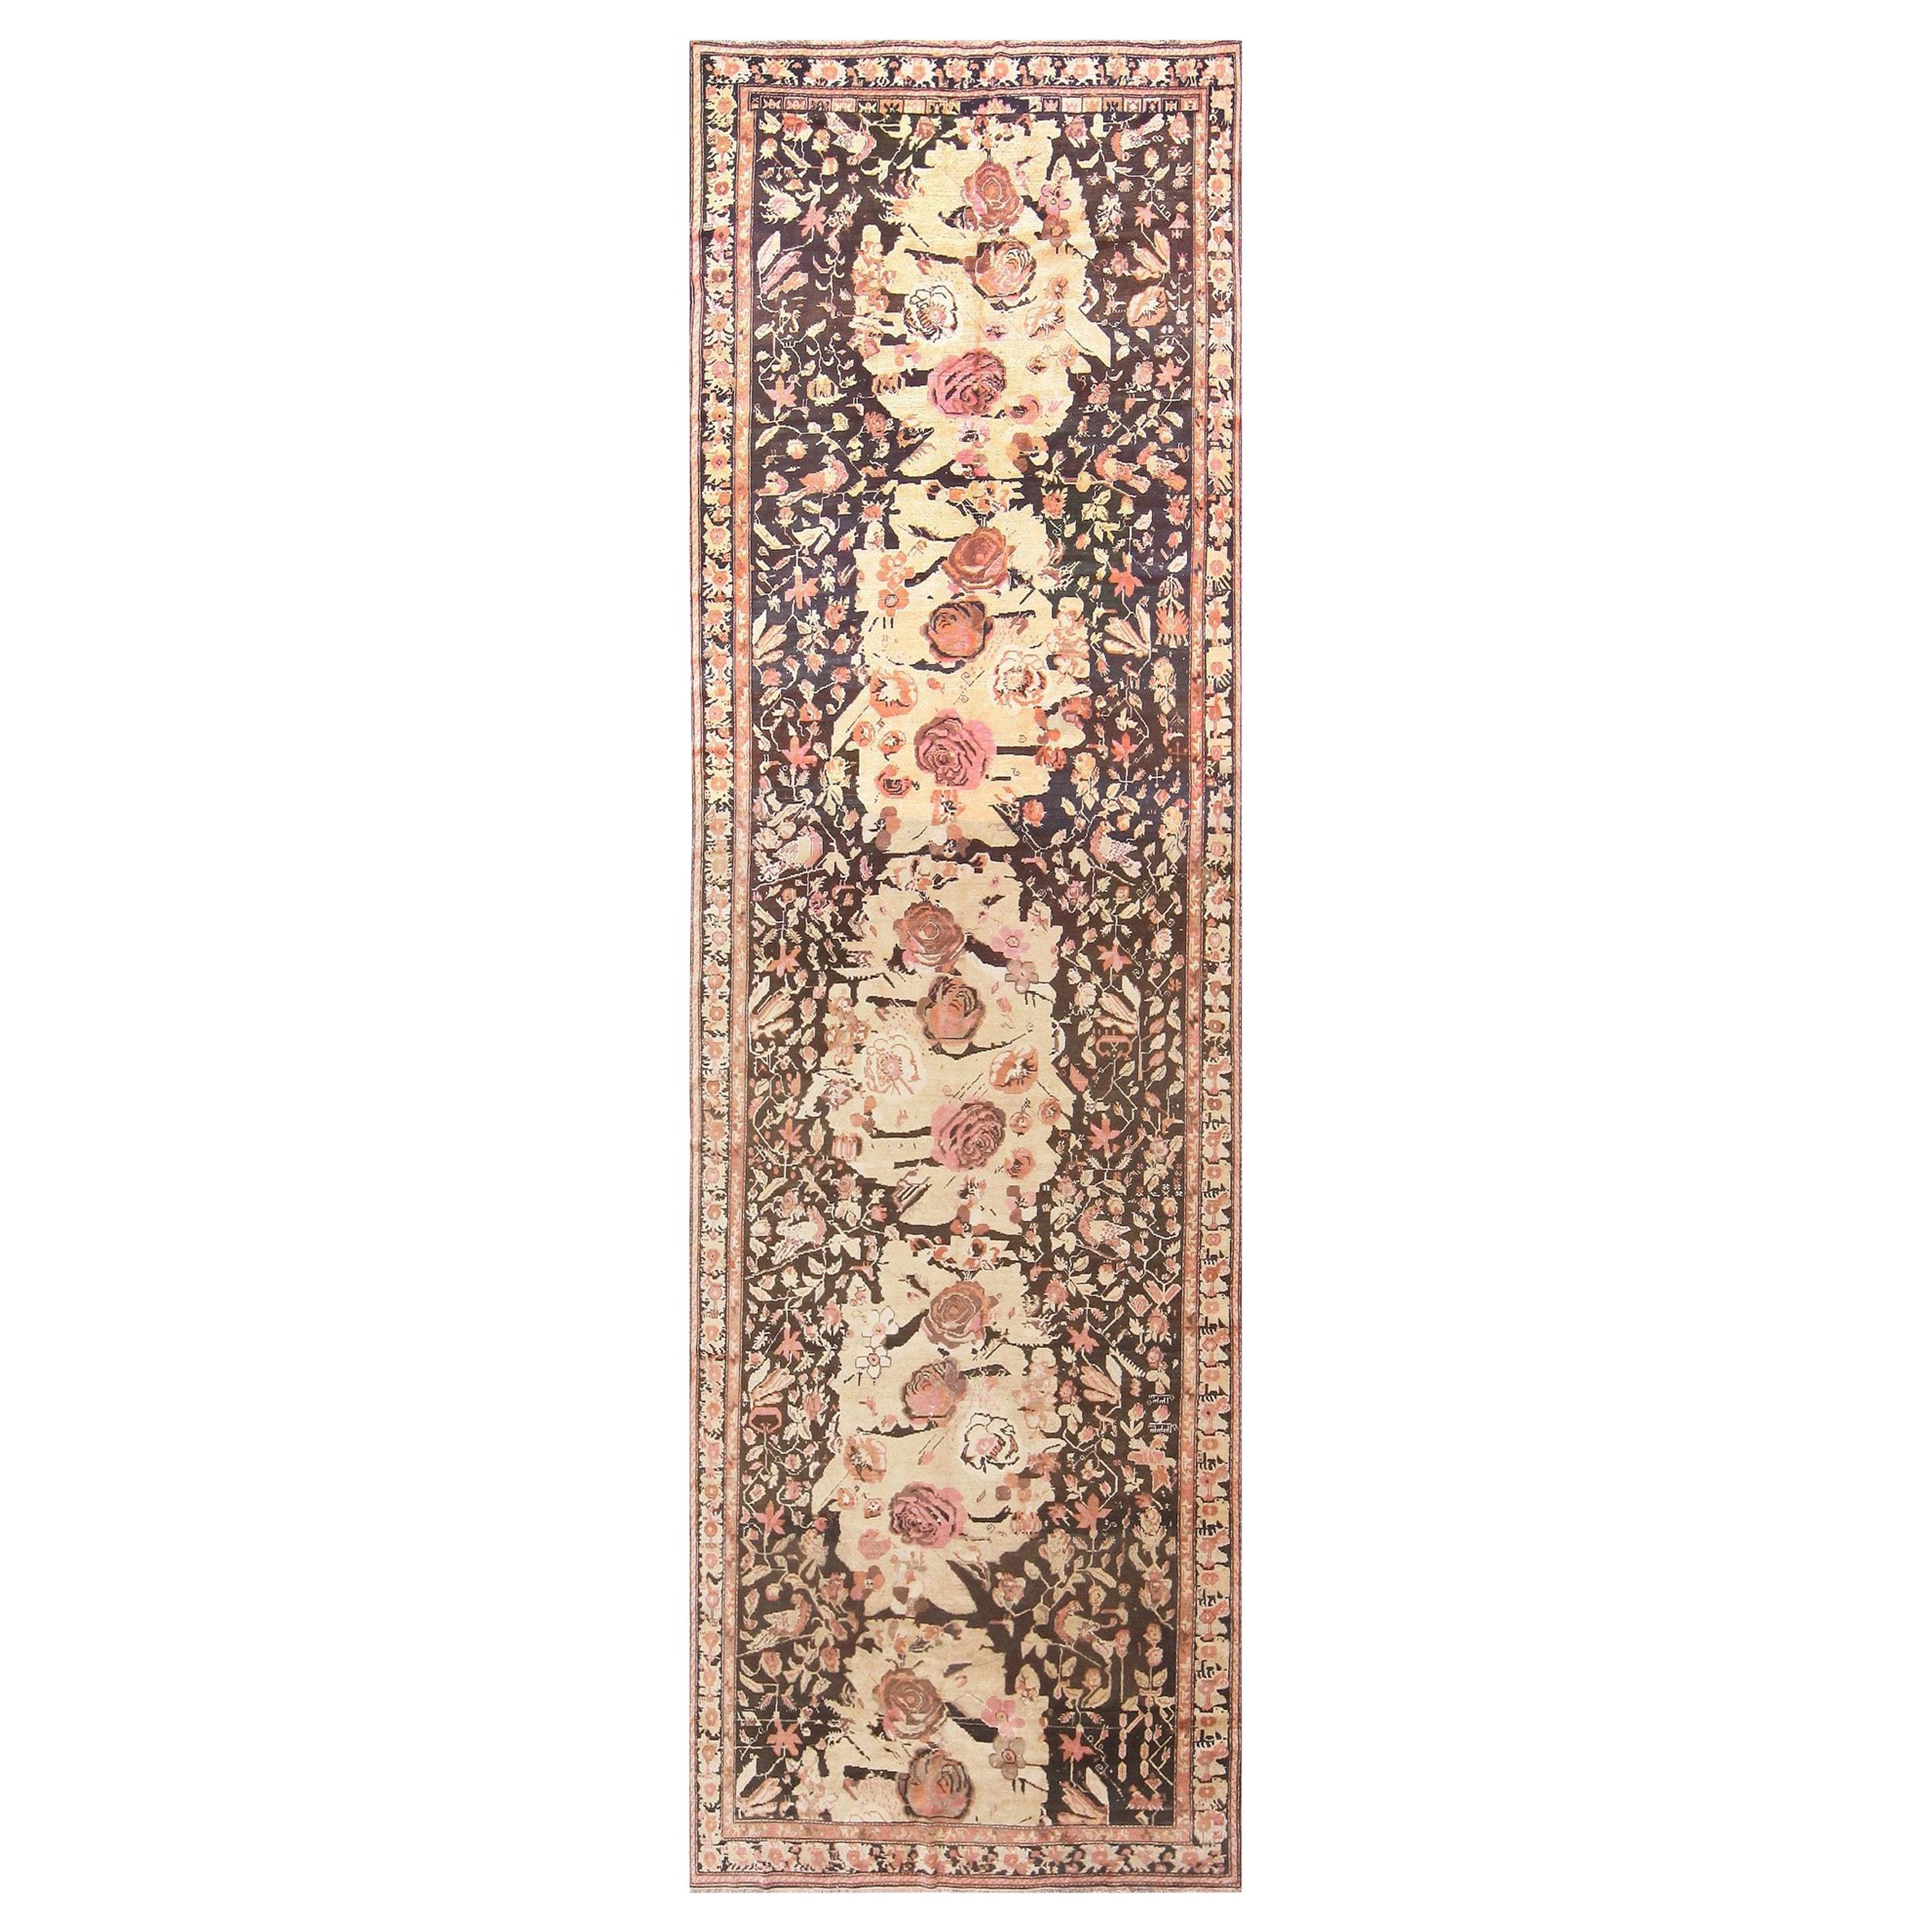 Tapis de couloir caucasien antique Karabagh. Taille : 5 pieds 3 po. x 15 pieds 4 po.